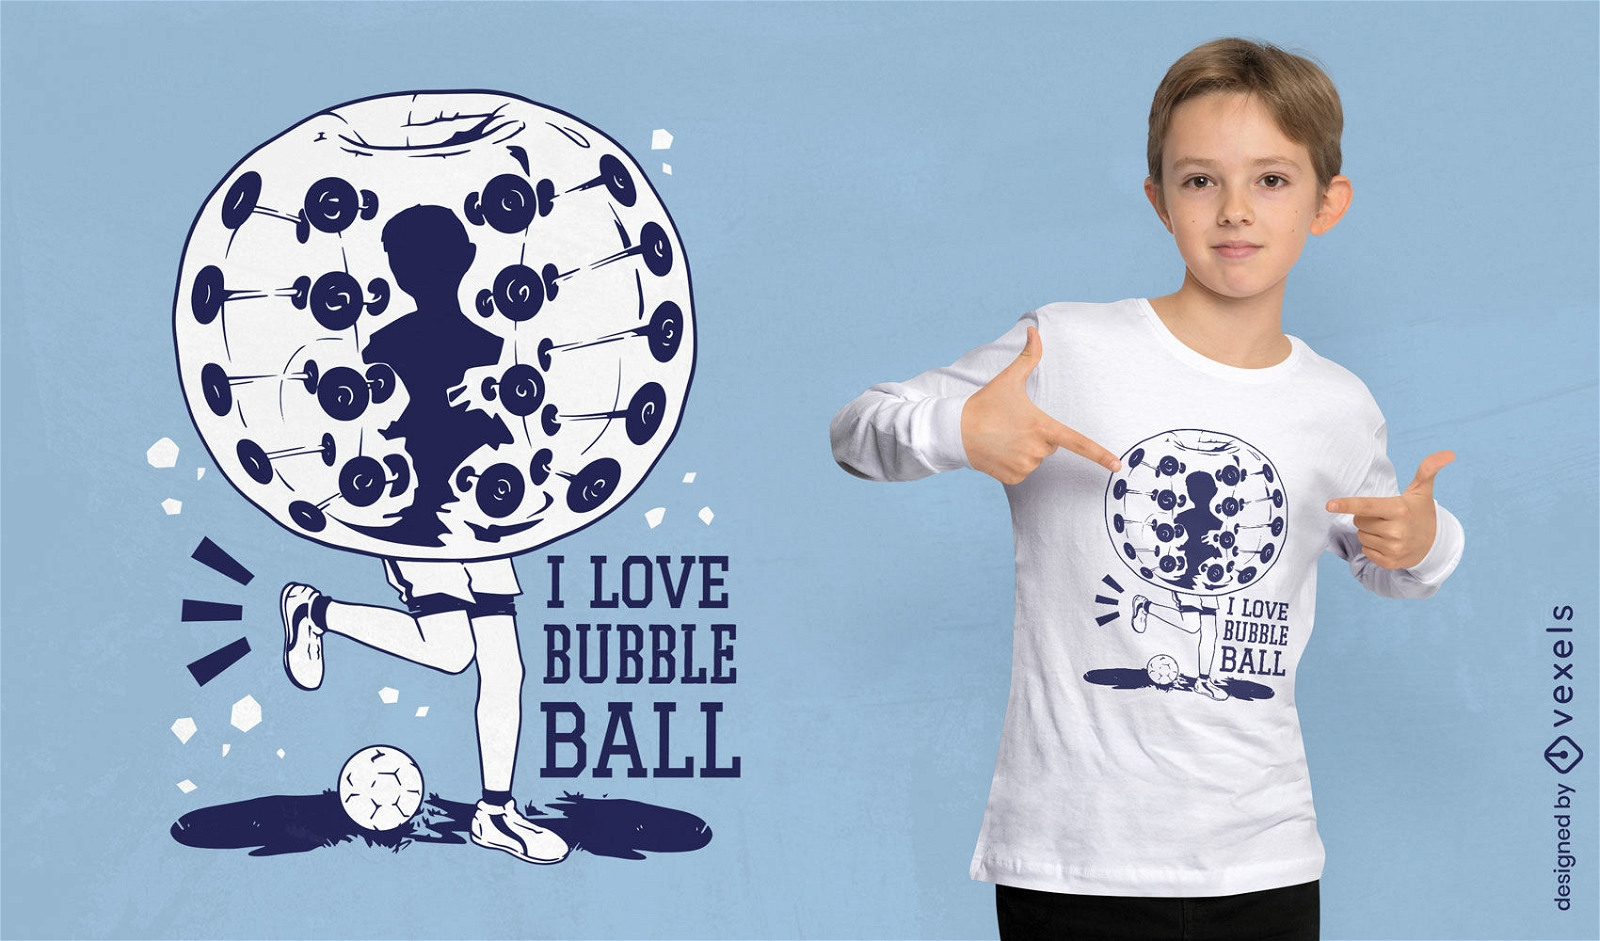 Bubble ball sport t-shirt design